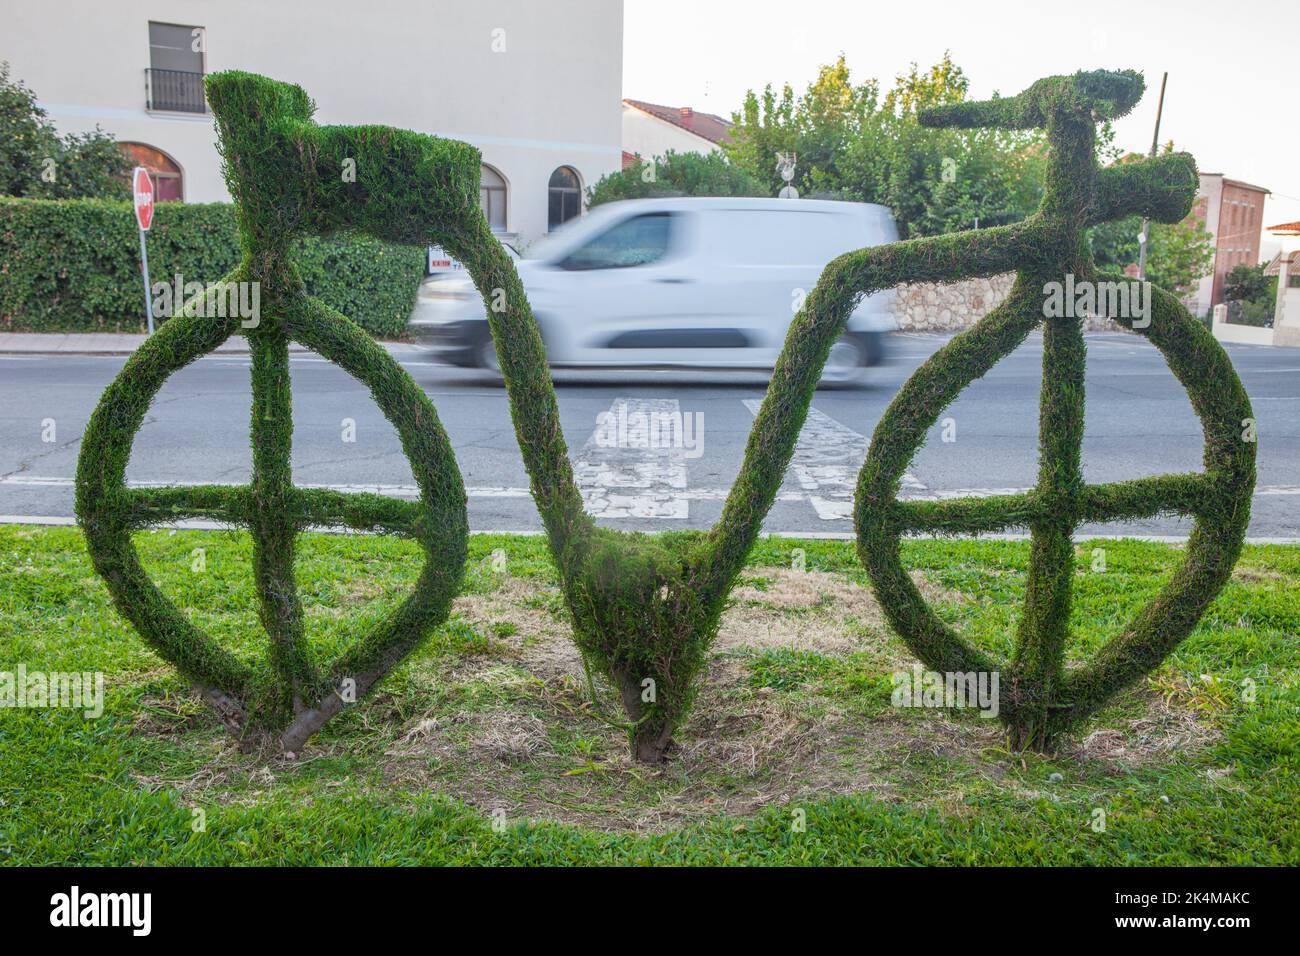 Sculptures de vélo vert, l'image la plus distinctive de la ville. Losar de la Vera, Caceres, Estrémadure, Espagne. Banque D'Images